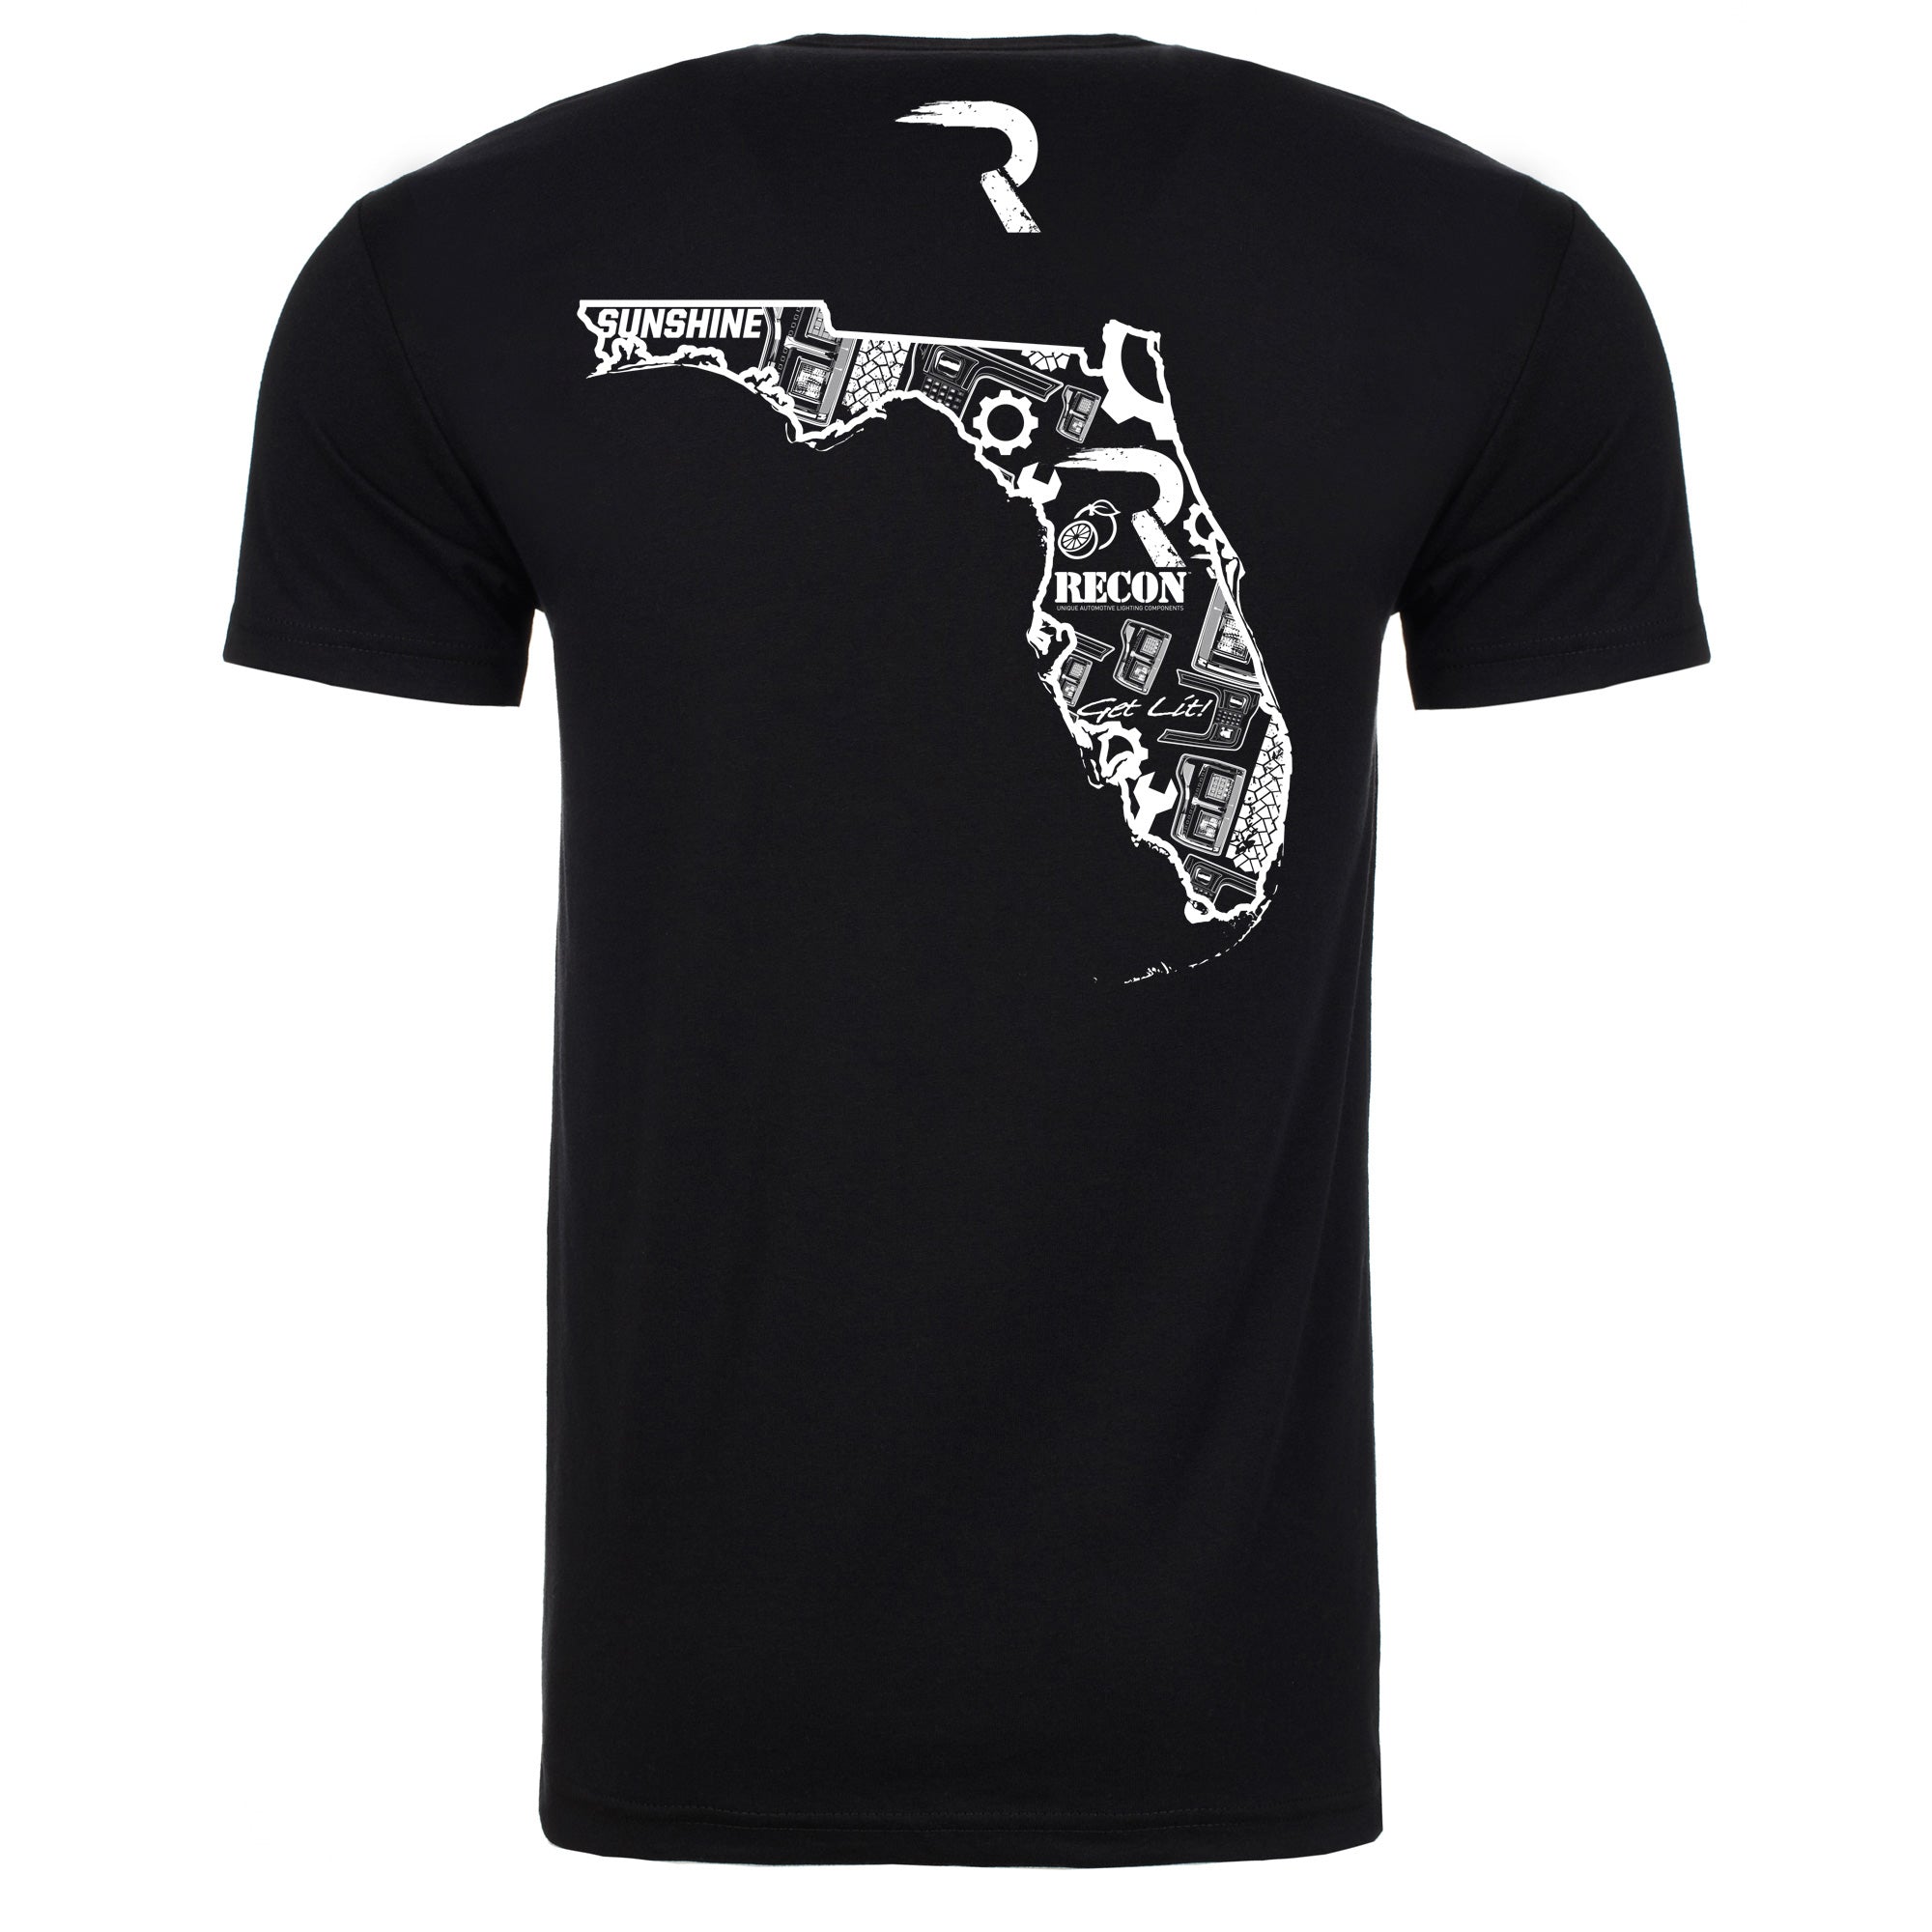 Illustrated Florida T-Shirt - Black w/ White Print - GoRECON